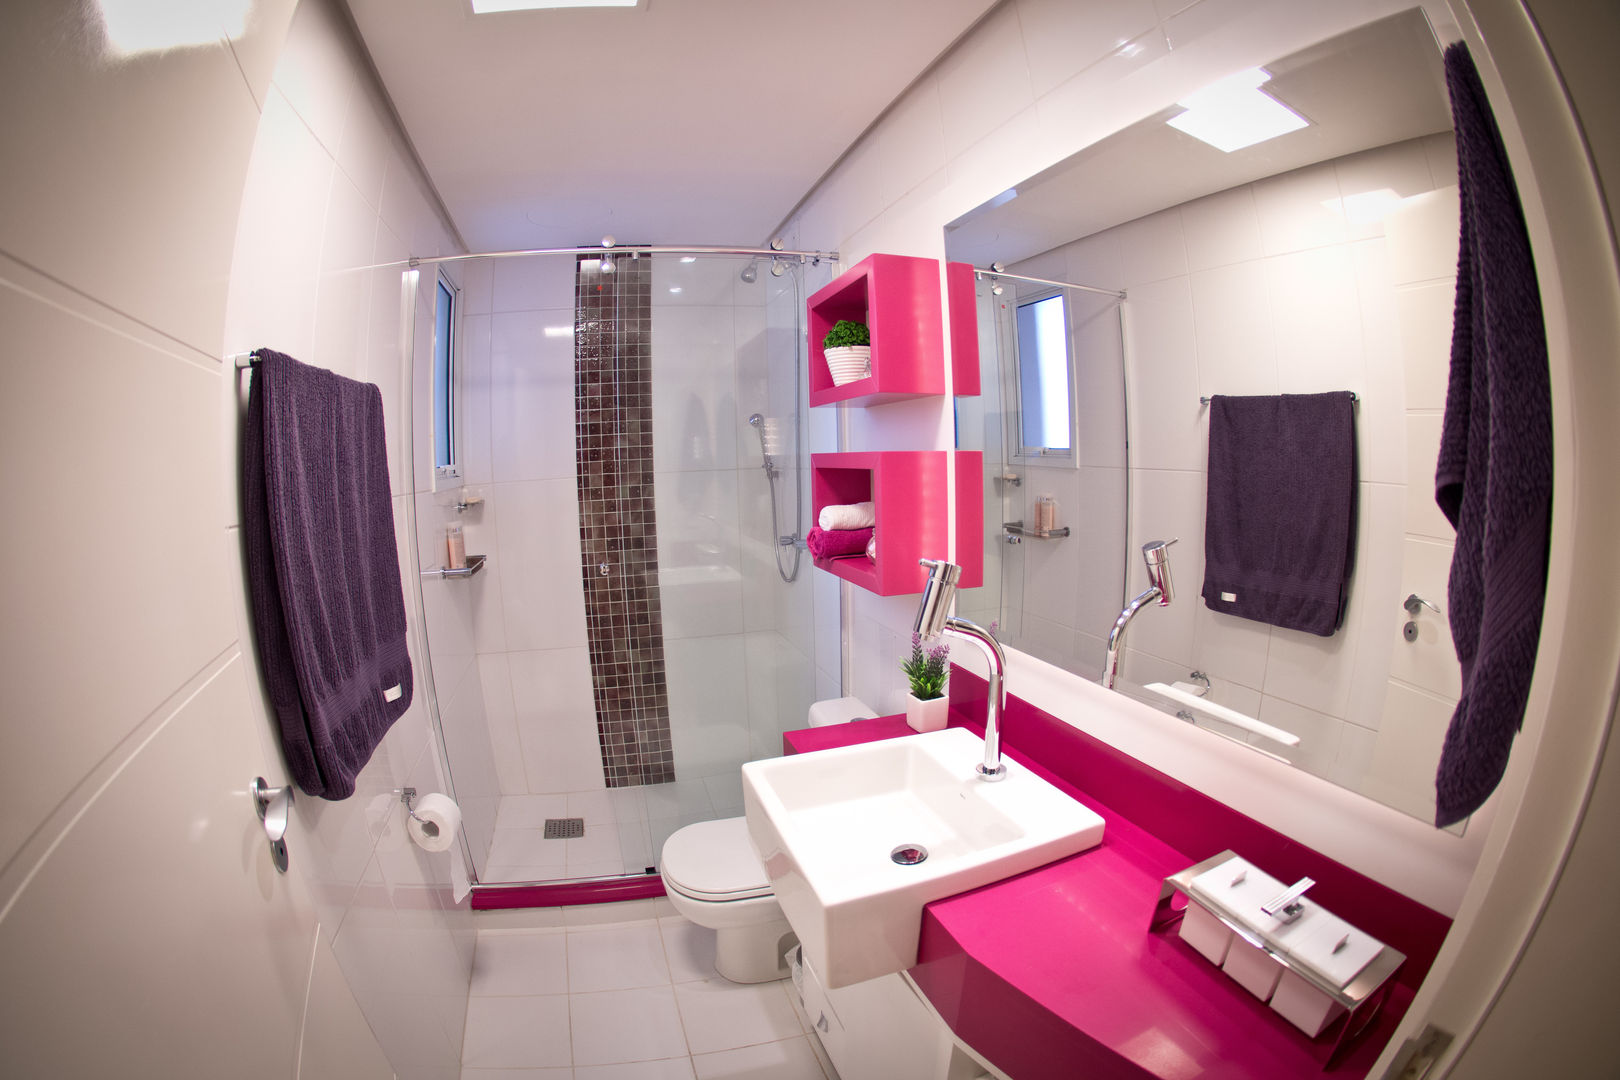 Banheiro Social Colorido INOVA Arquitetura Banheiros modernos Espelho,Encanamento,Tocar,Pia,Construção,Banheiro,Roxa,Pia do banheiro,Design de interiores,Banheiro